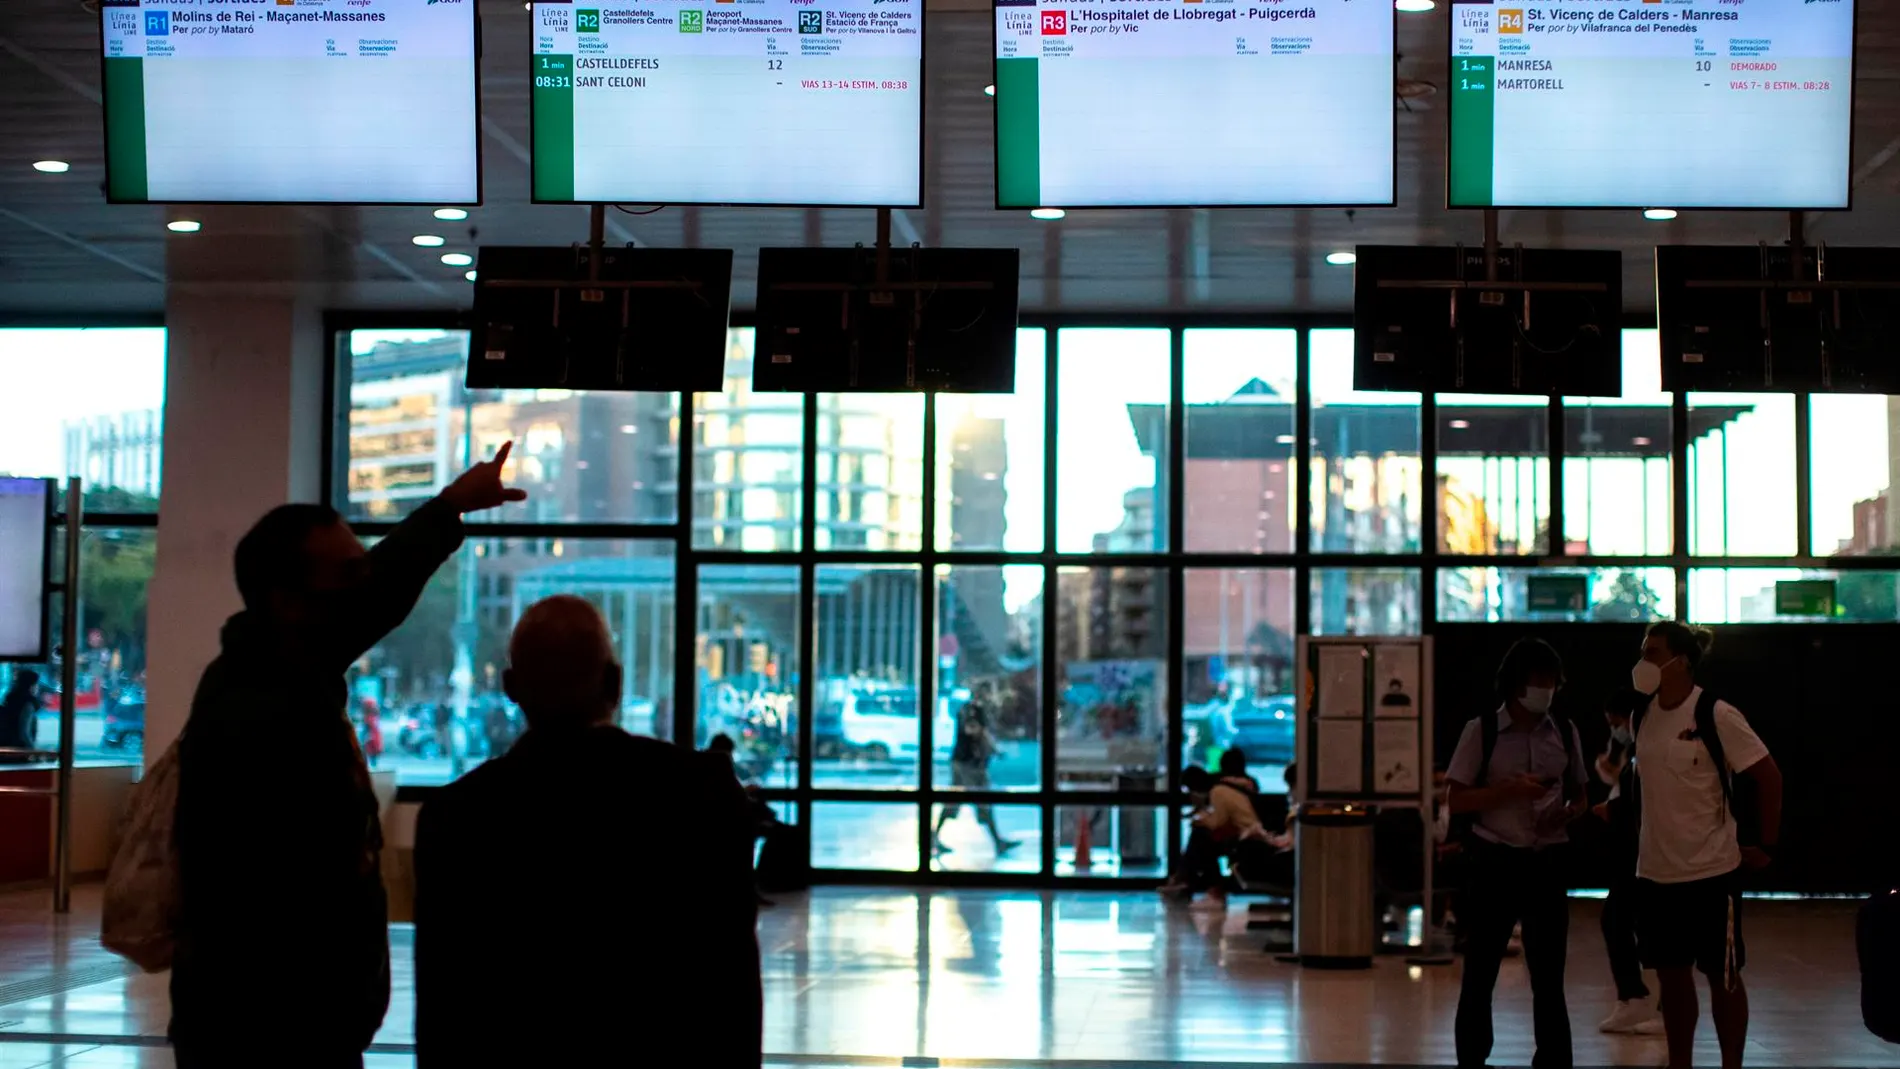 Varios usuarios de Renfe esperan n el vestíbulo de la estación de Sants a que aparezca información sobre los horarios de los trenes.